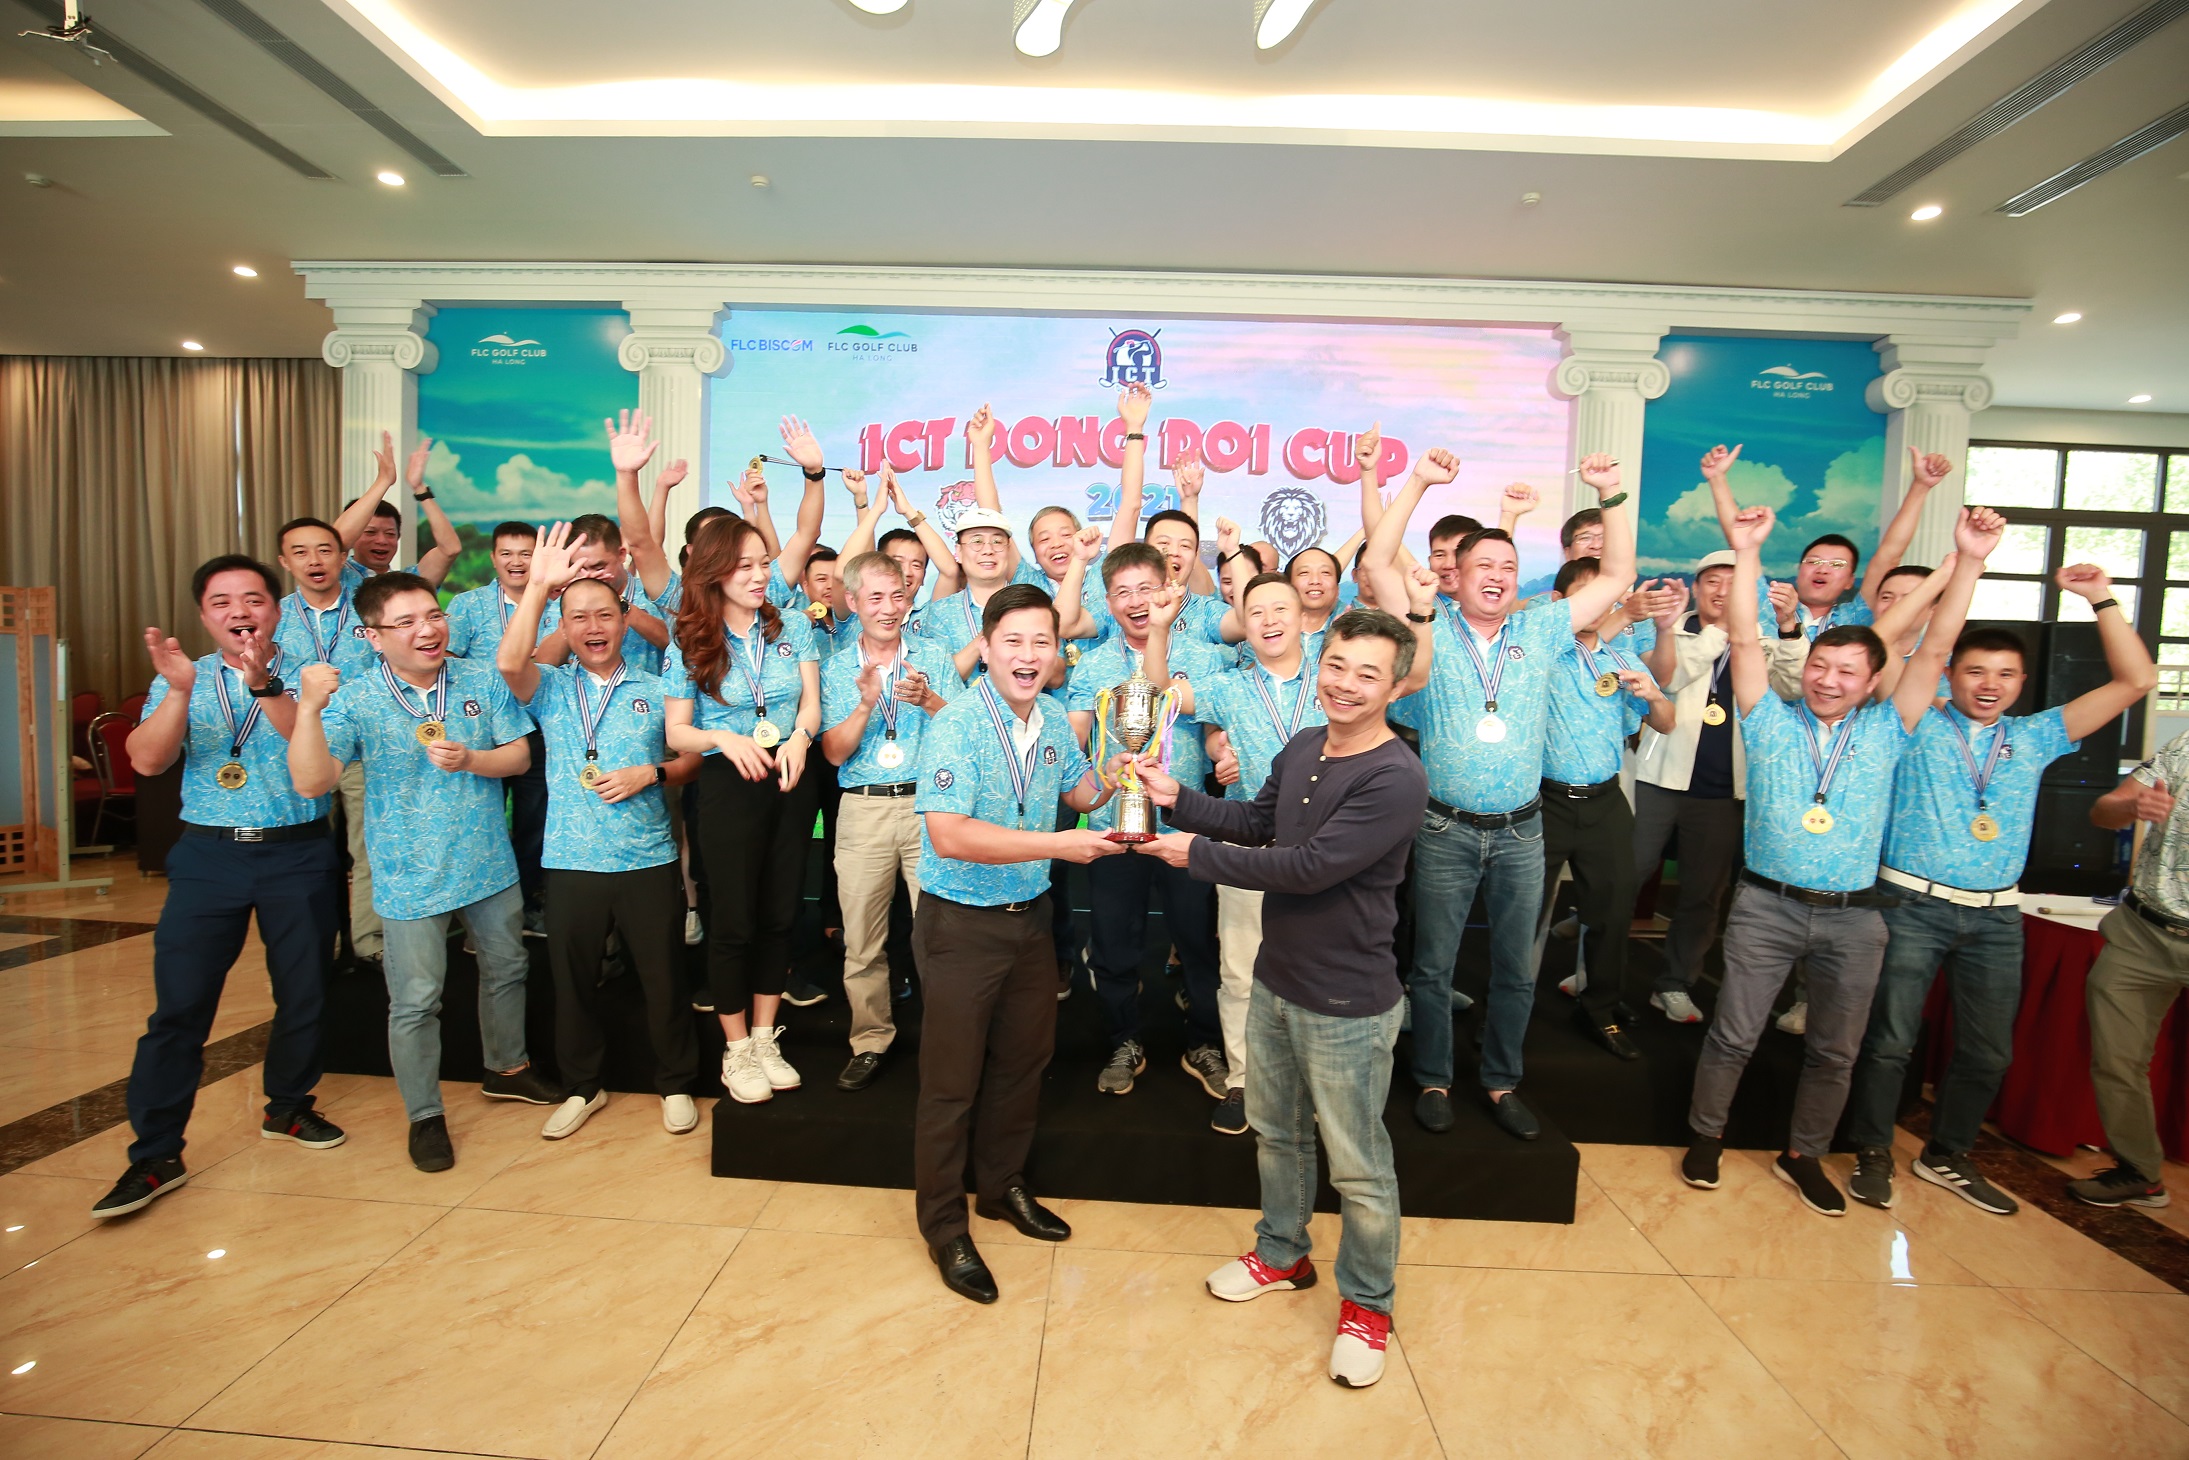 Giải ICT Đồng Đội Cup 2021 kết thúc với chiến thắng thuộc về team Lion